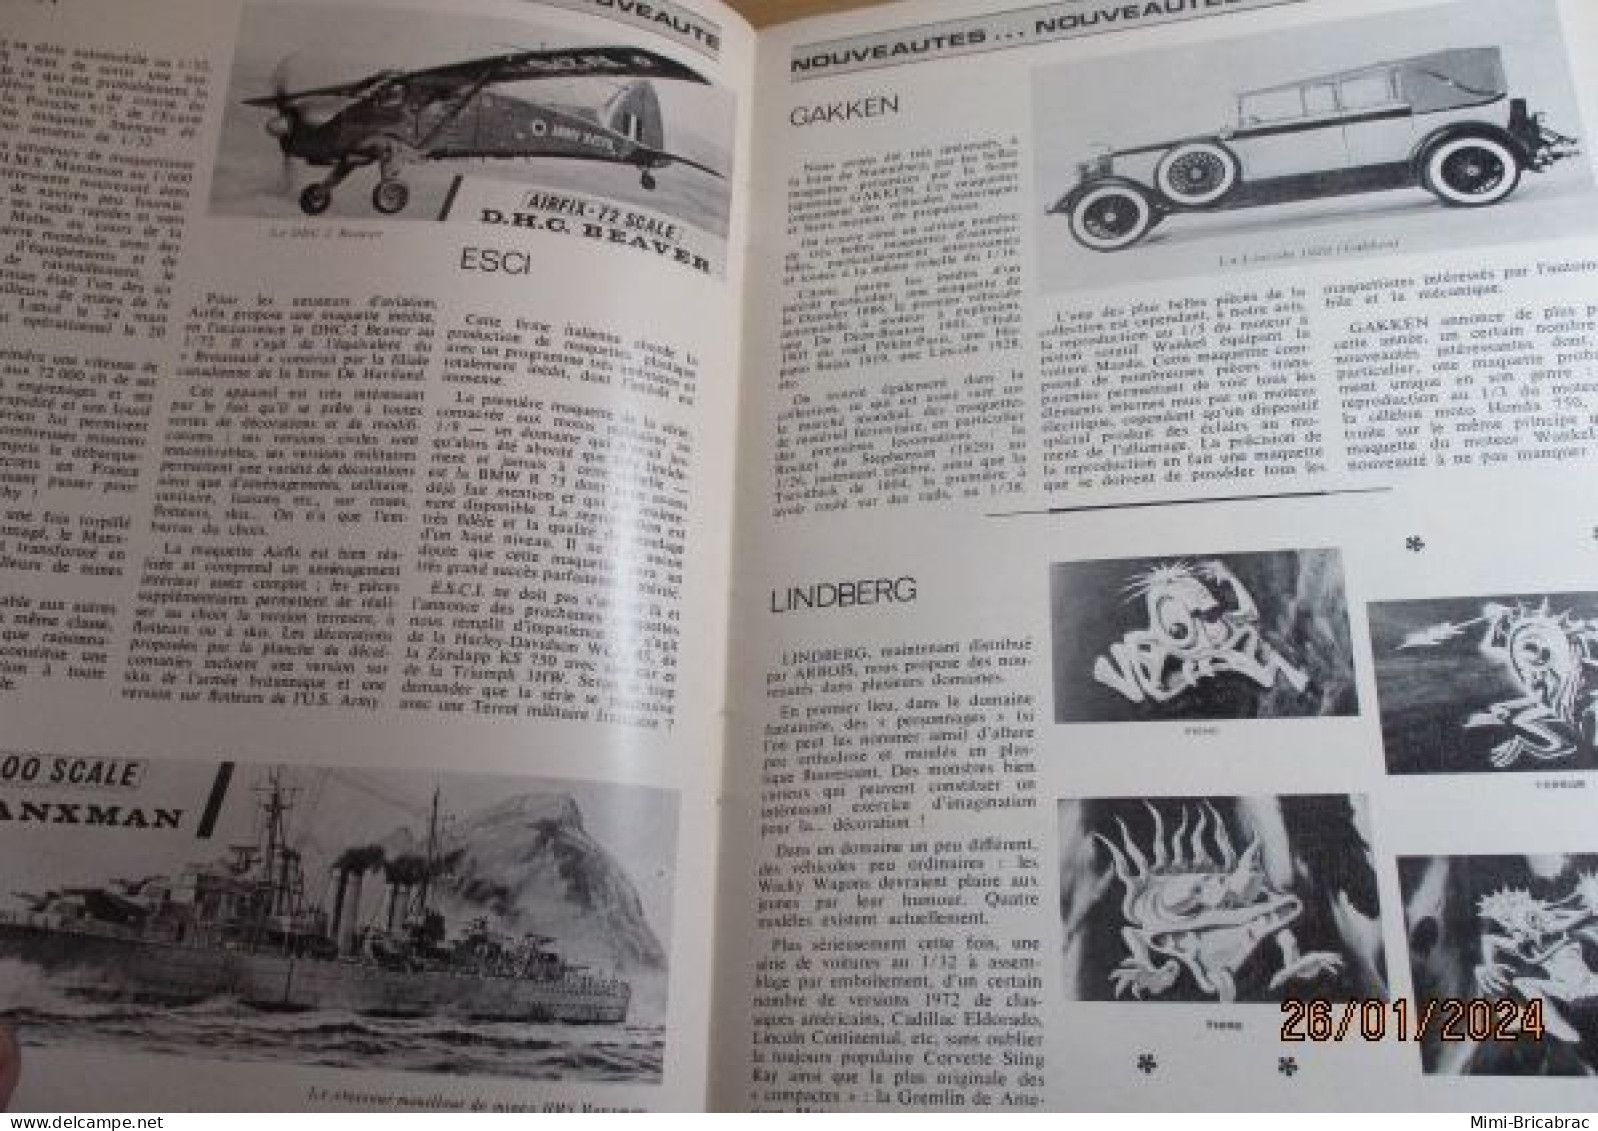 CAGI 1e Revue de maquettisme plastique années 60/70 : MPM n°18 de 1972 très bon état ! Sommaire en photo 2 ou 3